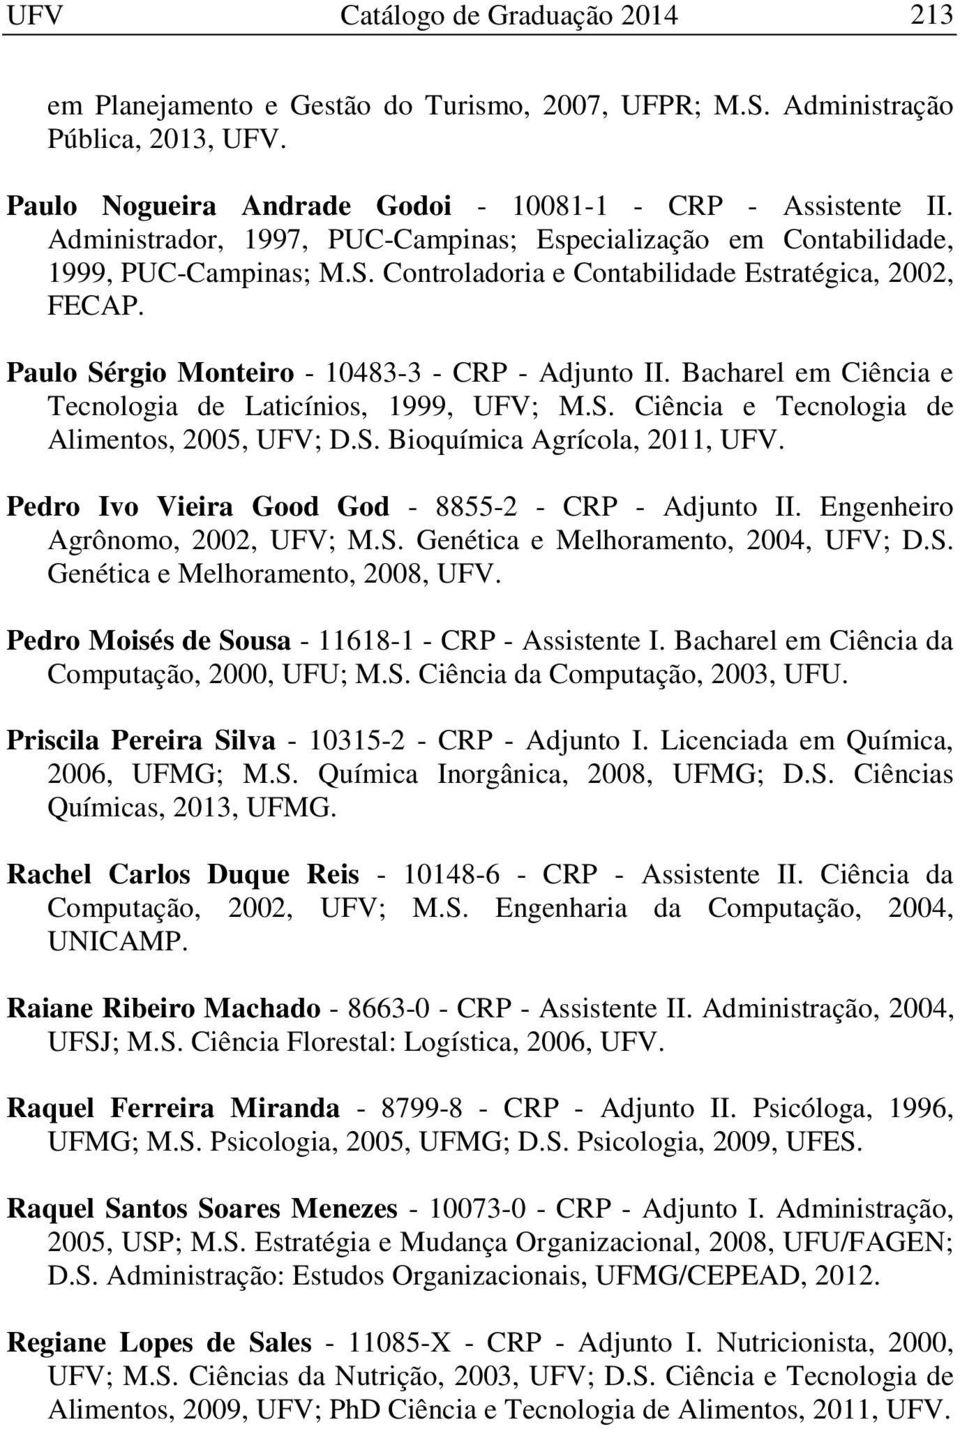 Bacharel em Ciência e Tecnologia de Laticínios, 1999, UFV; M.S. Ciência e Tecnologia de Alimentos, 2005, UFV; D.S. Bioquímica Agrícola, 2011, UFV.